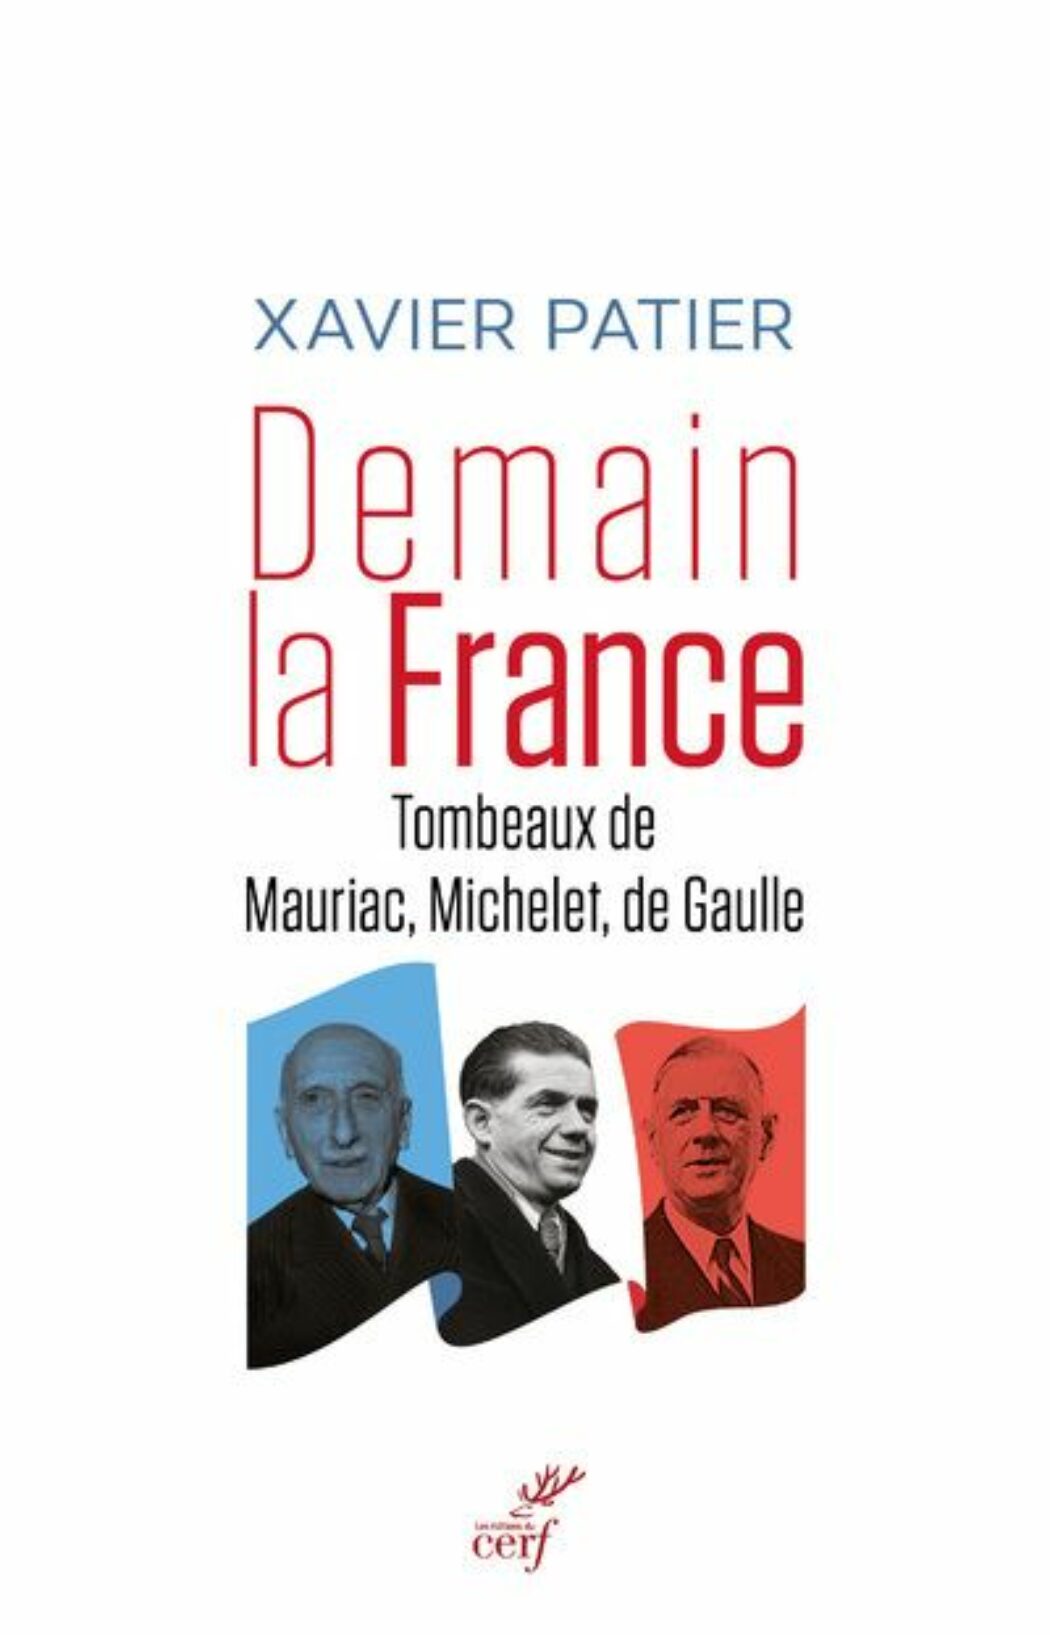 Mauriac, de Gaulle et Michelet : la Foi, l’Espérance et la Charité ?